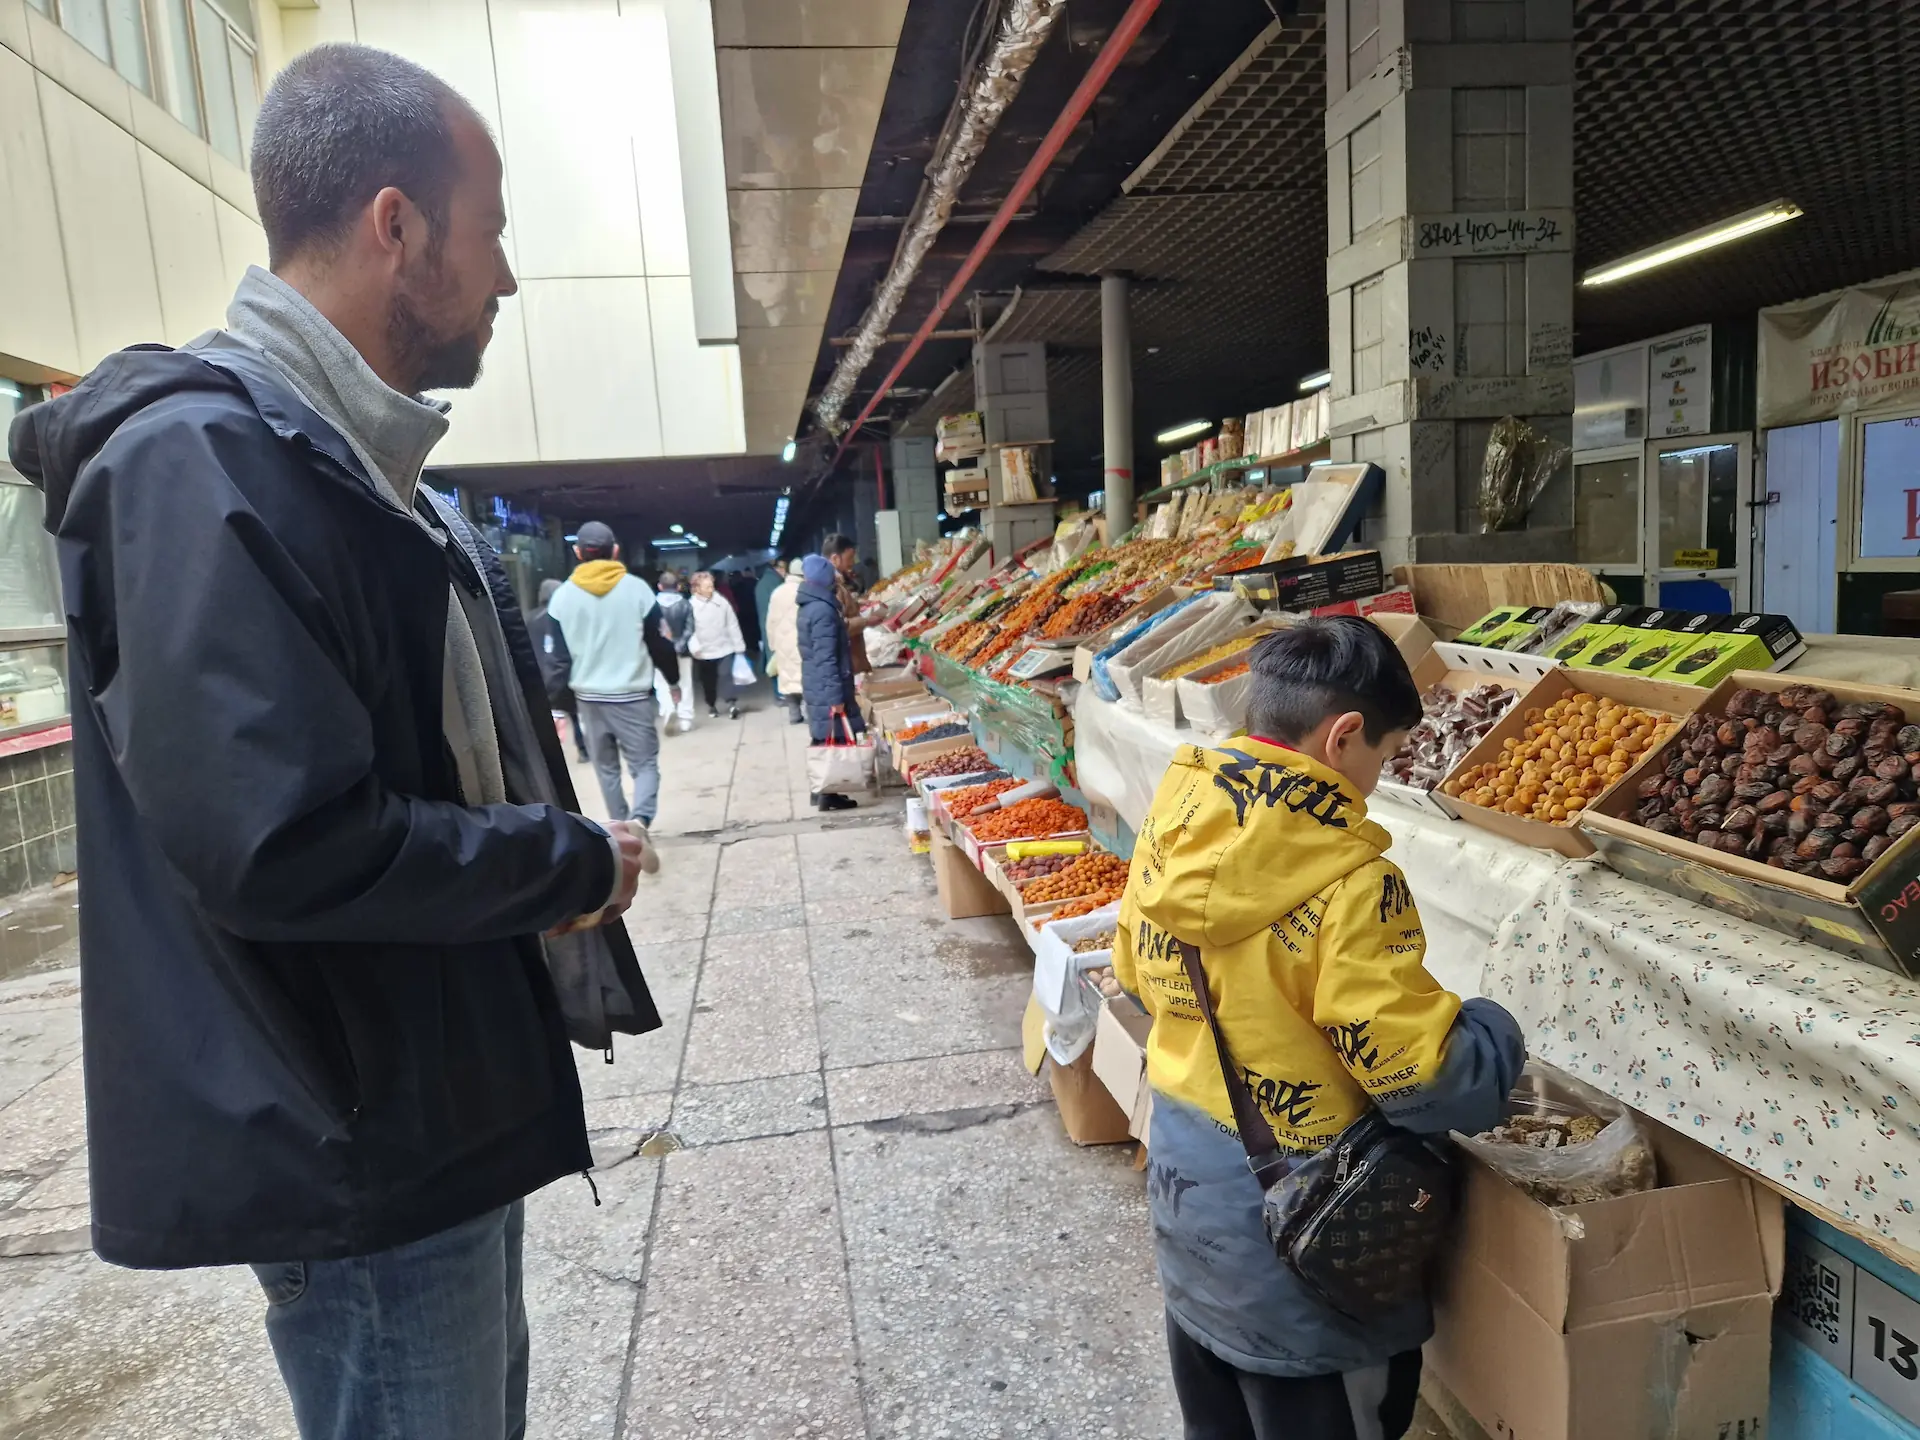 Robin achète des barres de céréales à un stand de fruits secs et noix, et se fait servir par un petit enfant